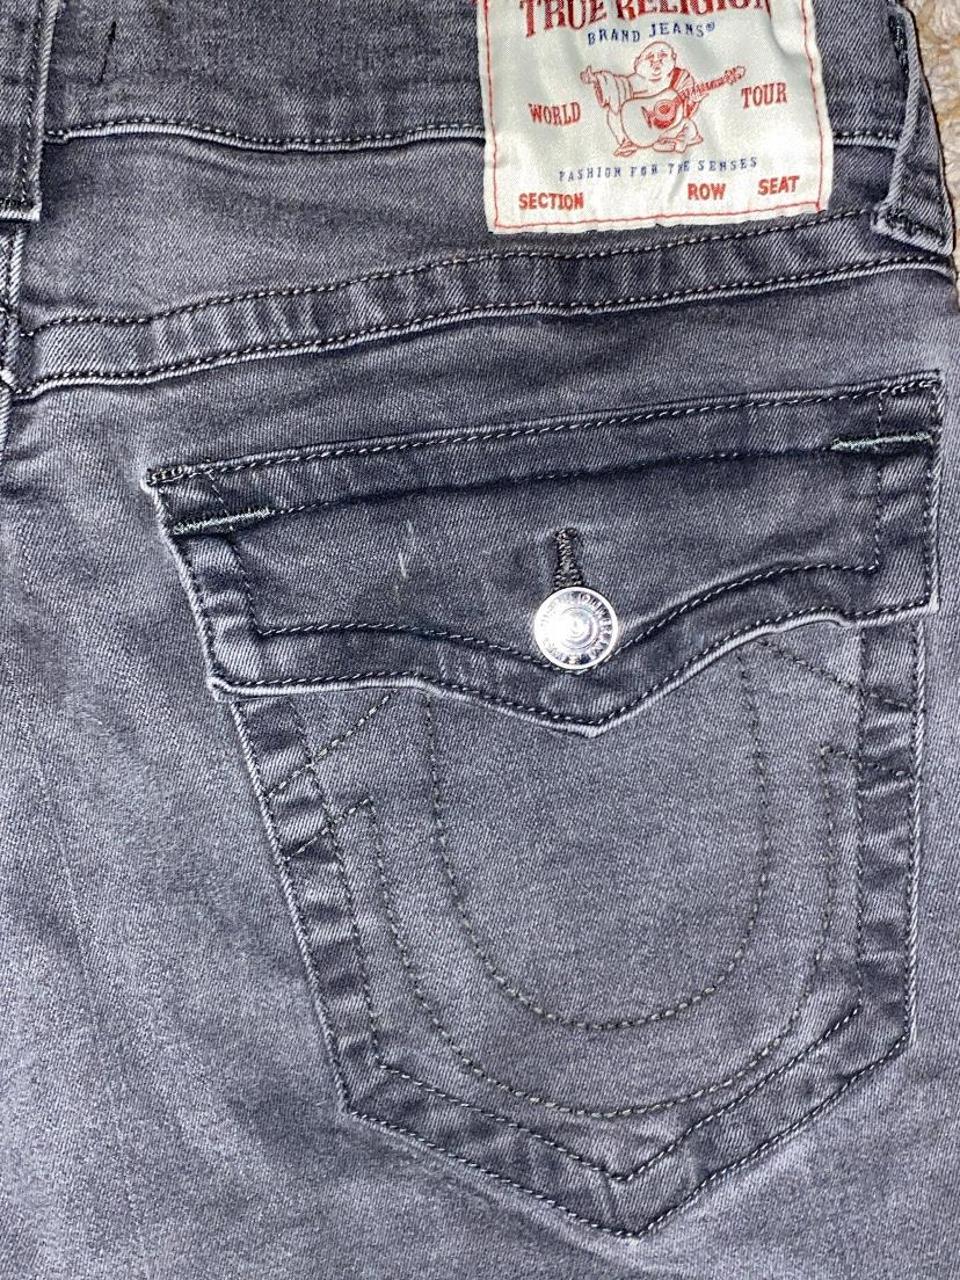 grey true religion jeans black stitching... - Depop